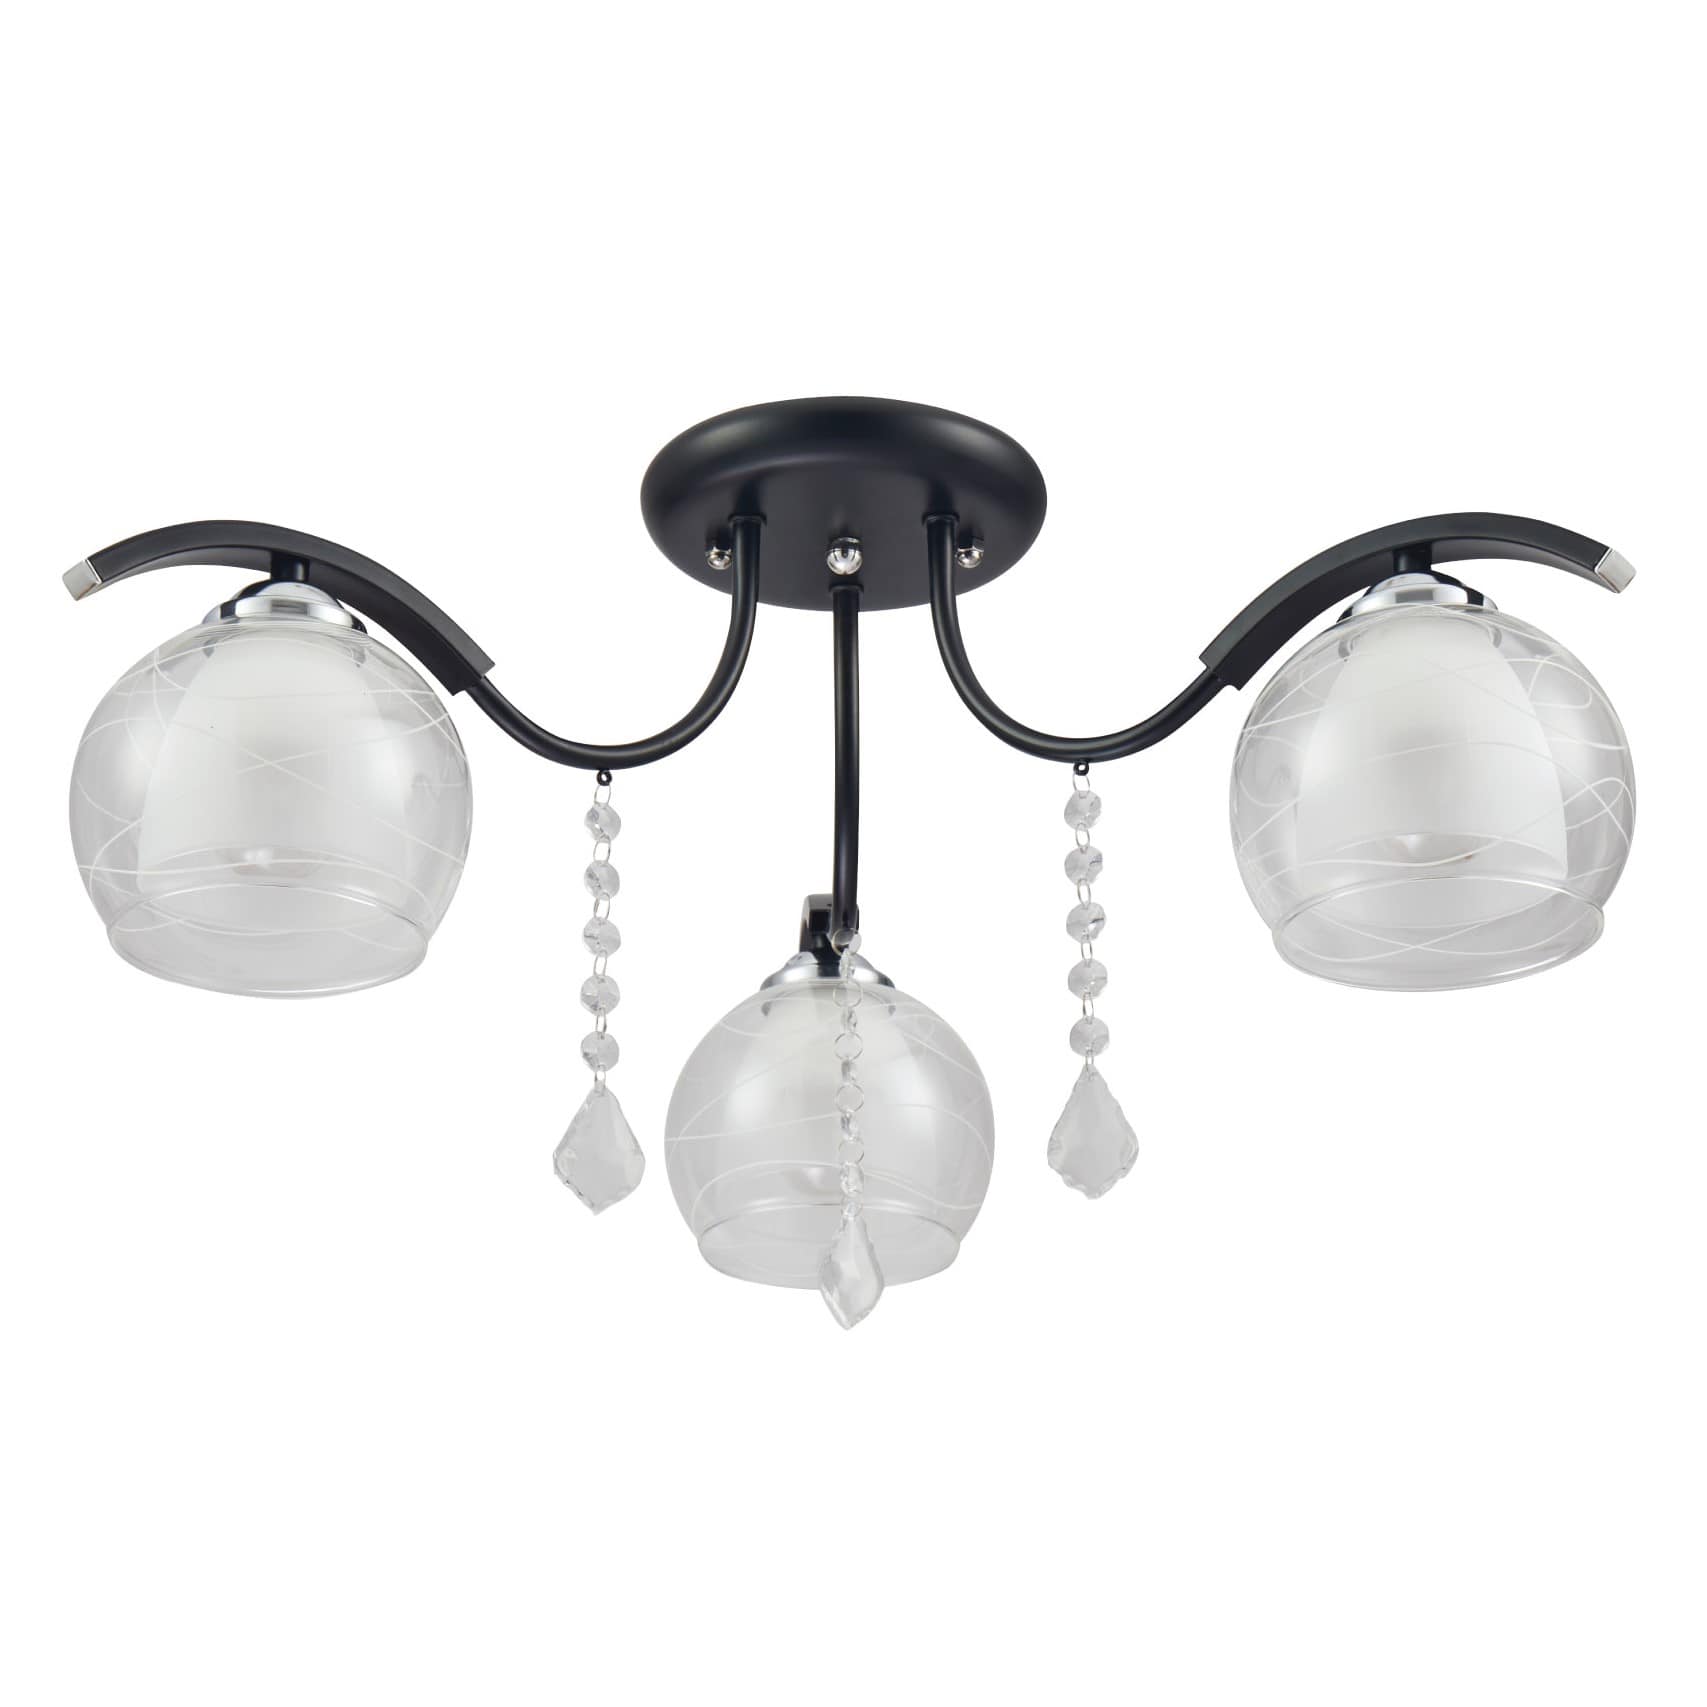 TEKLEDSemi-Flush Ceiling LightClear Opal Double Layer Bell Glass Black Metal Semi Flush Ceiling Light158-1934213 Lamp1